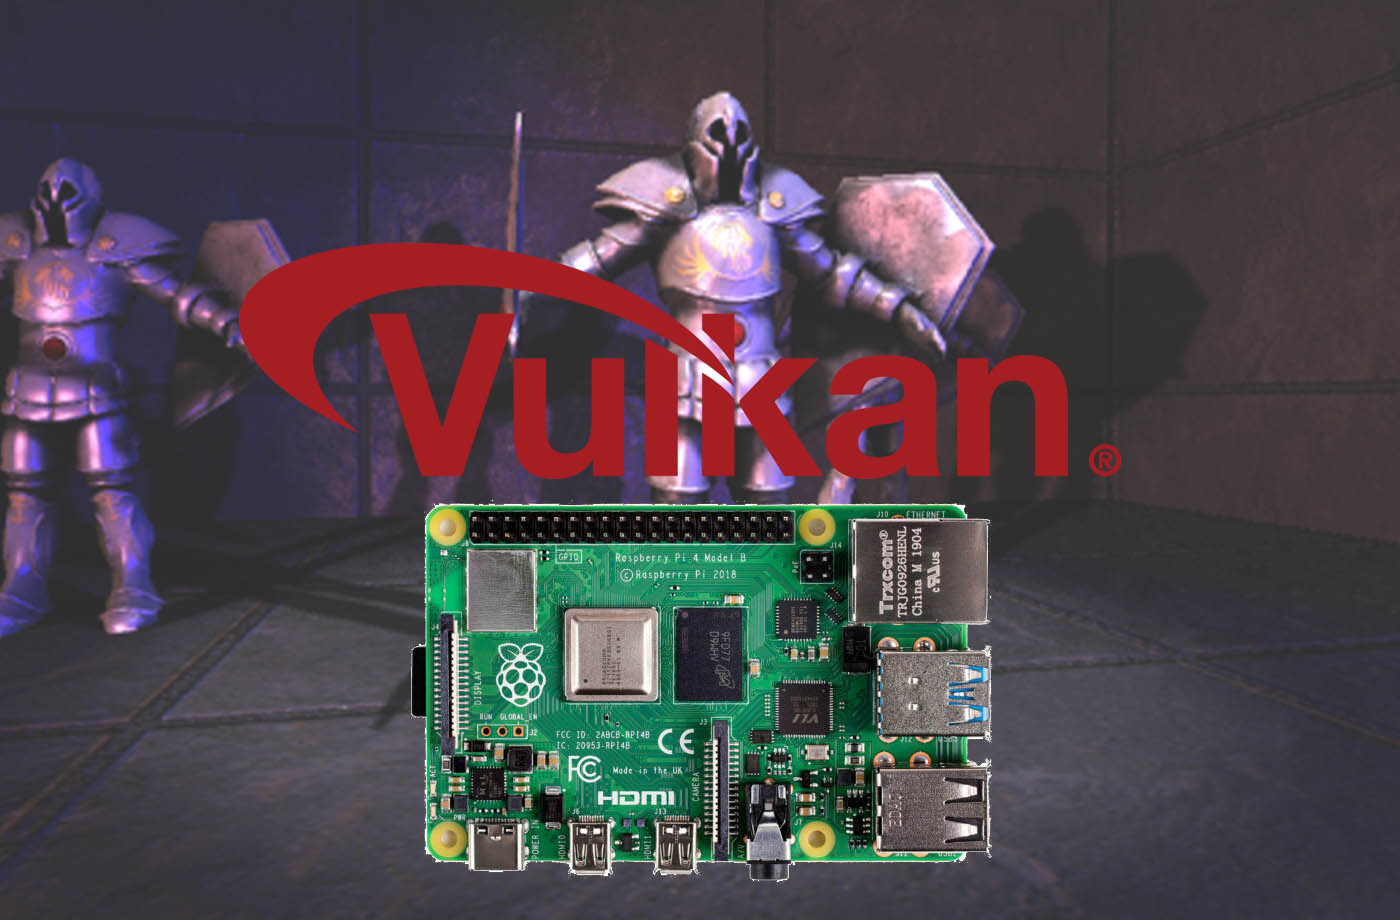 Les Raspberry 4 vont devenir bien plus performants en 3D grâce aux drivers Vulkan